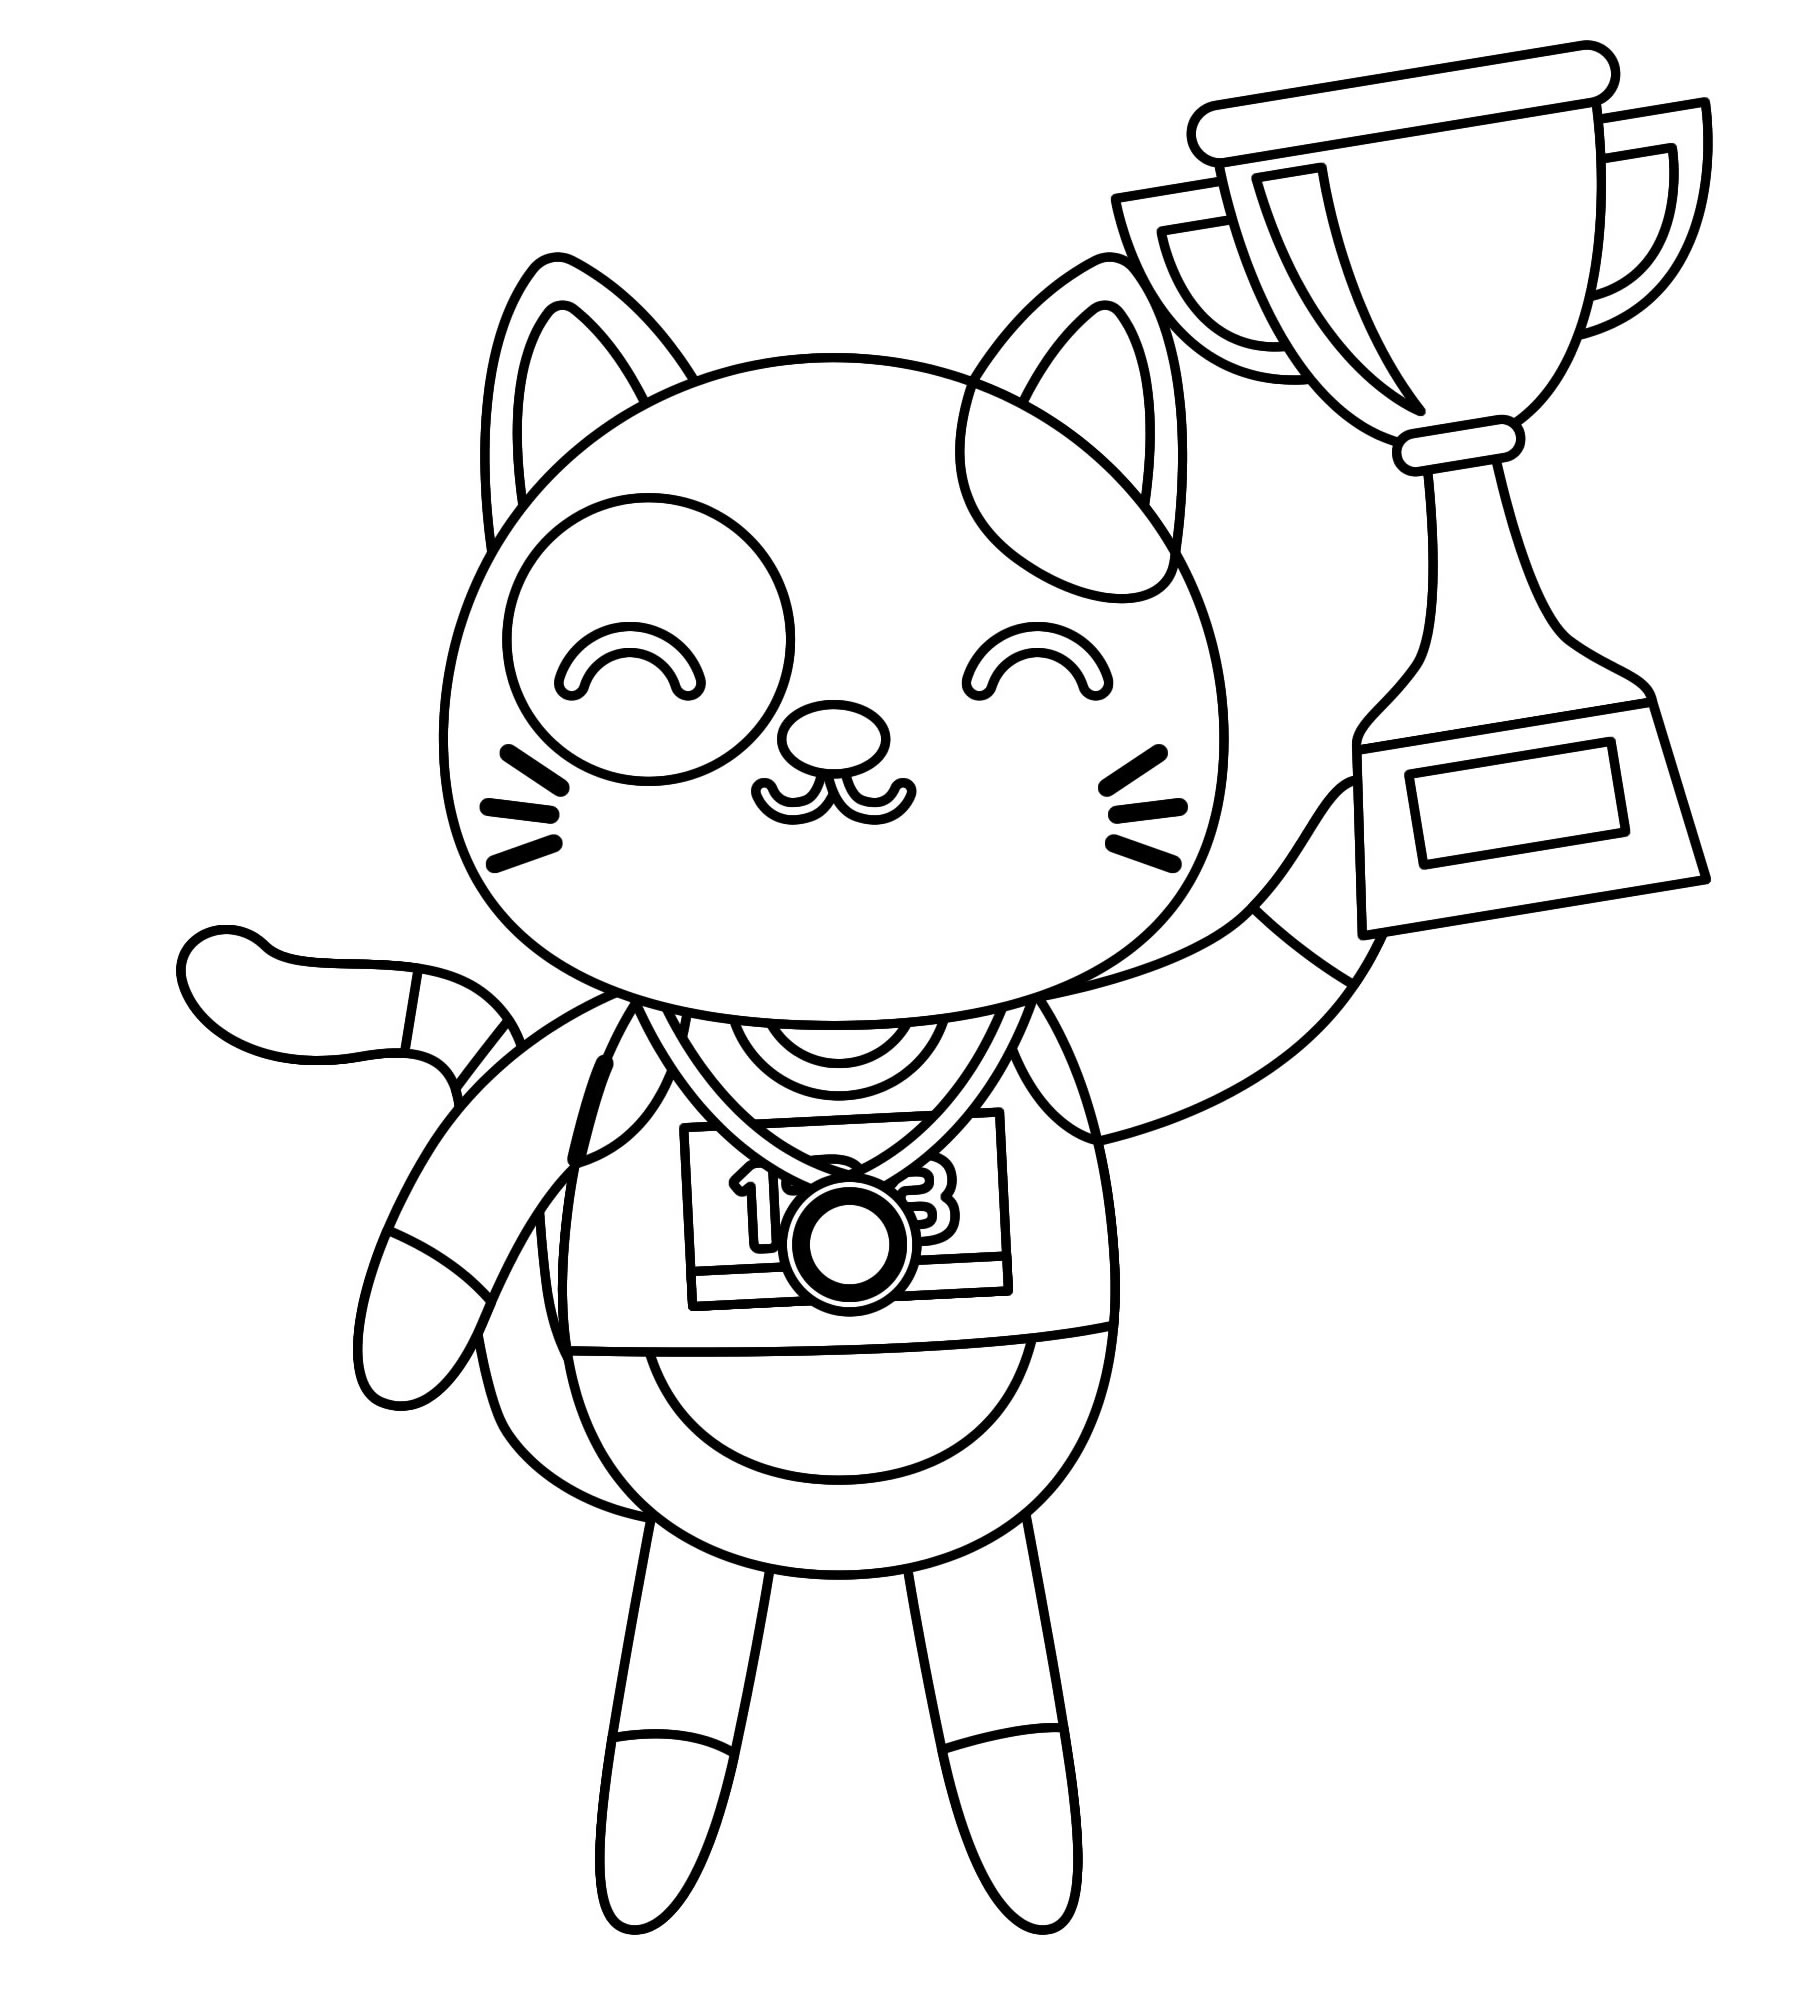 Кот победитель раскраска для детей